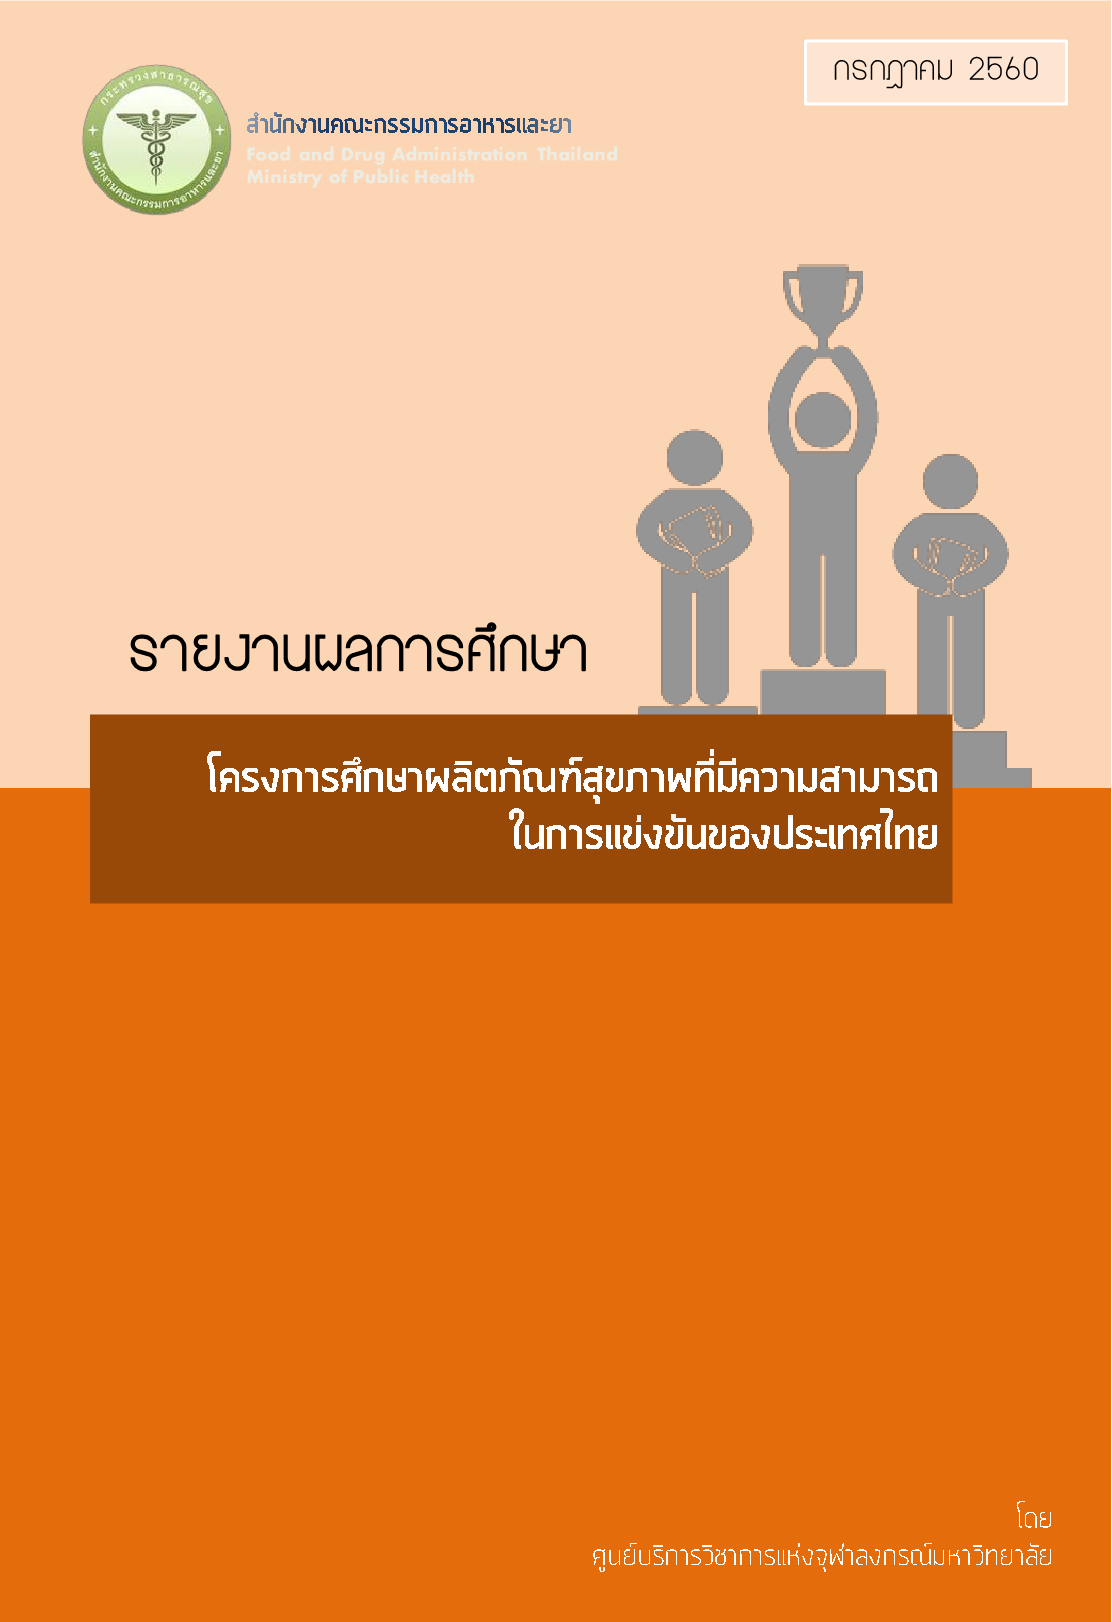 60_โครงการศึกษาผลิตภัณฑ์สุขภาพที่มีความสามารถในการแข่งขันของประเทศไทย 25601.png